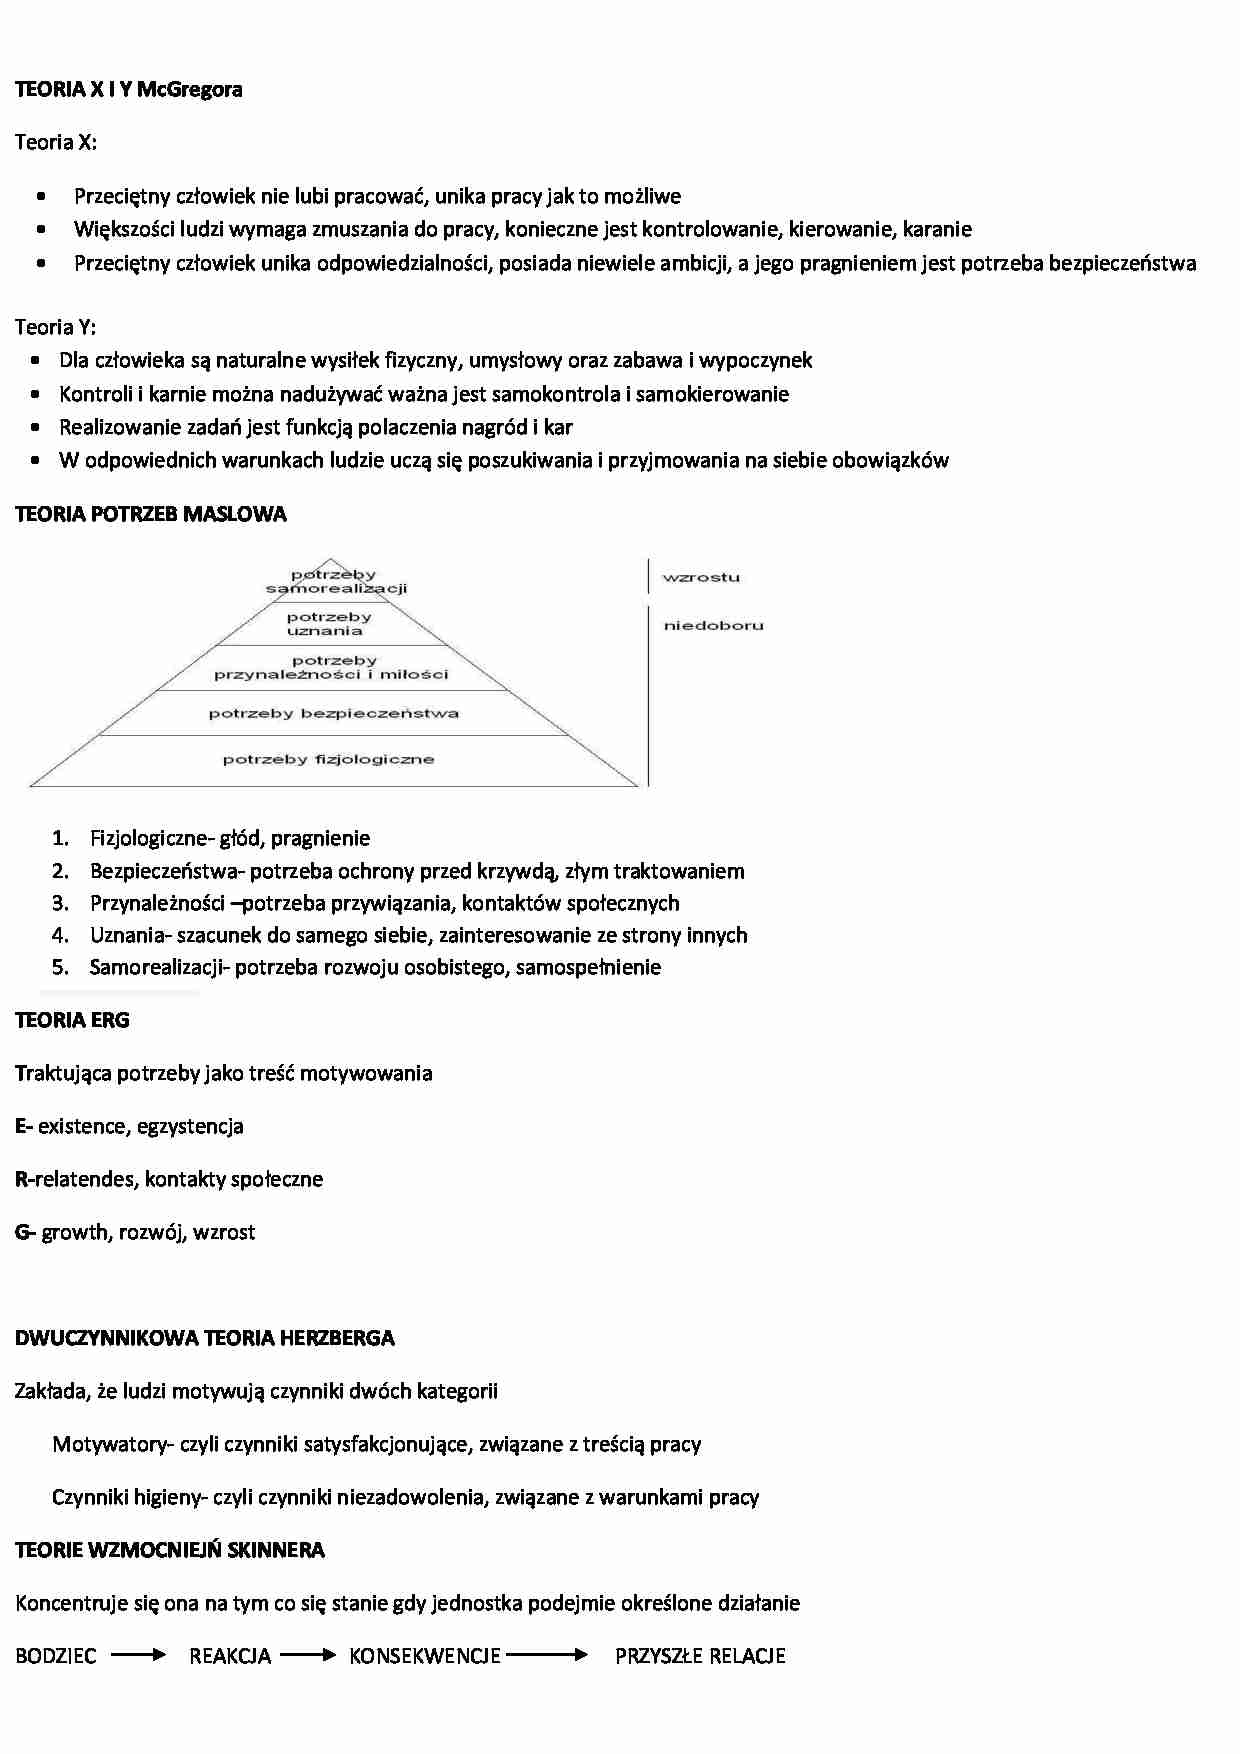 Teorie motywacji i współczesne teorie zarządzania - strona 1